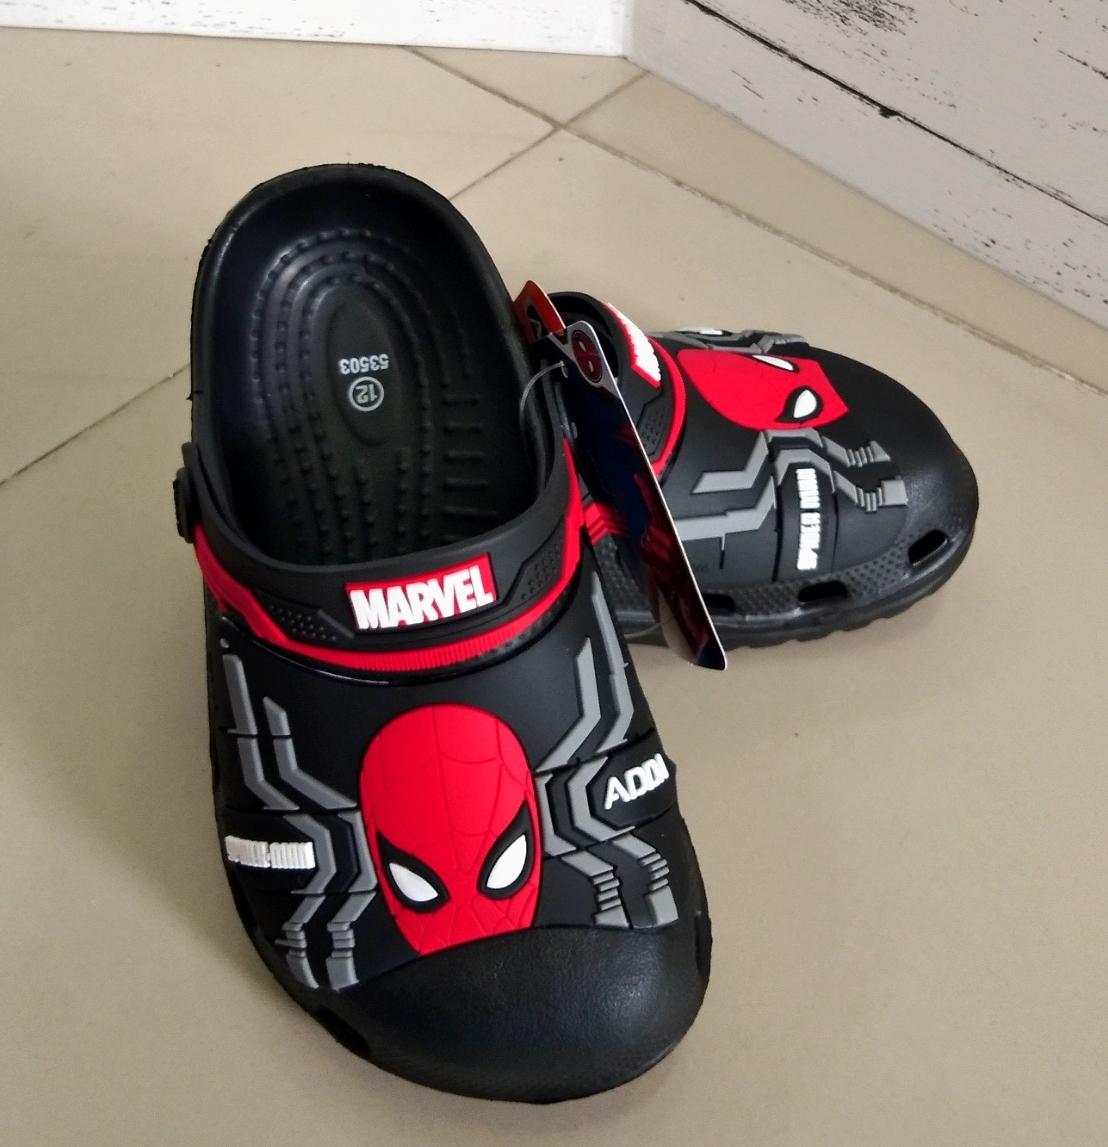 SCPPlaza รองเท้าเด็ก รัดส้น ทรง Crocs เด็กผู้ชาย หัวโต Adda Avengers Spiderman สไปเดอร์แมน 53503 สีดำ ลดราคาพิเศษสุดๆ พร้อมส่งเคอรี่